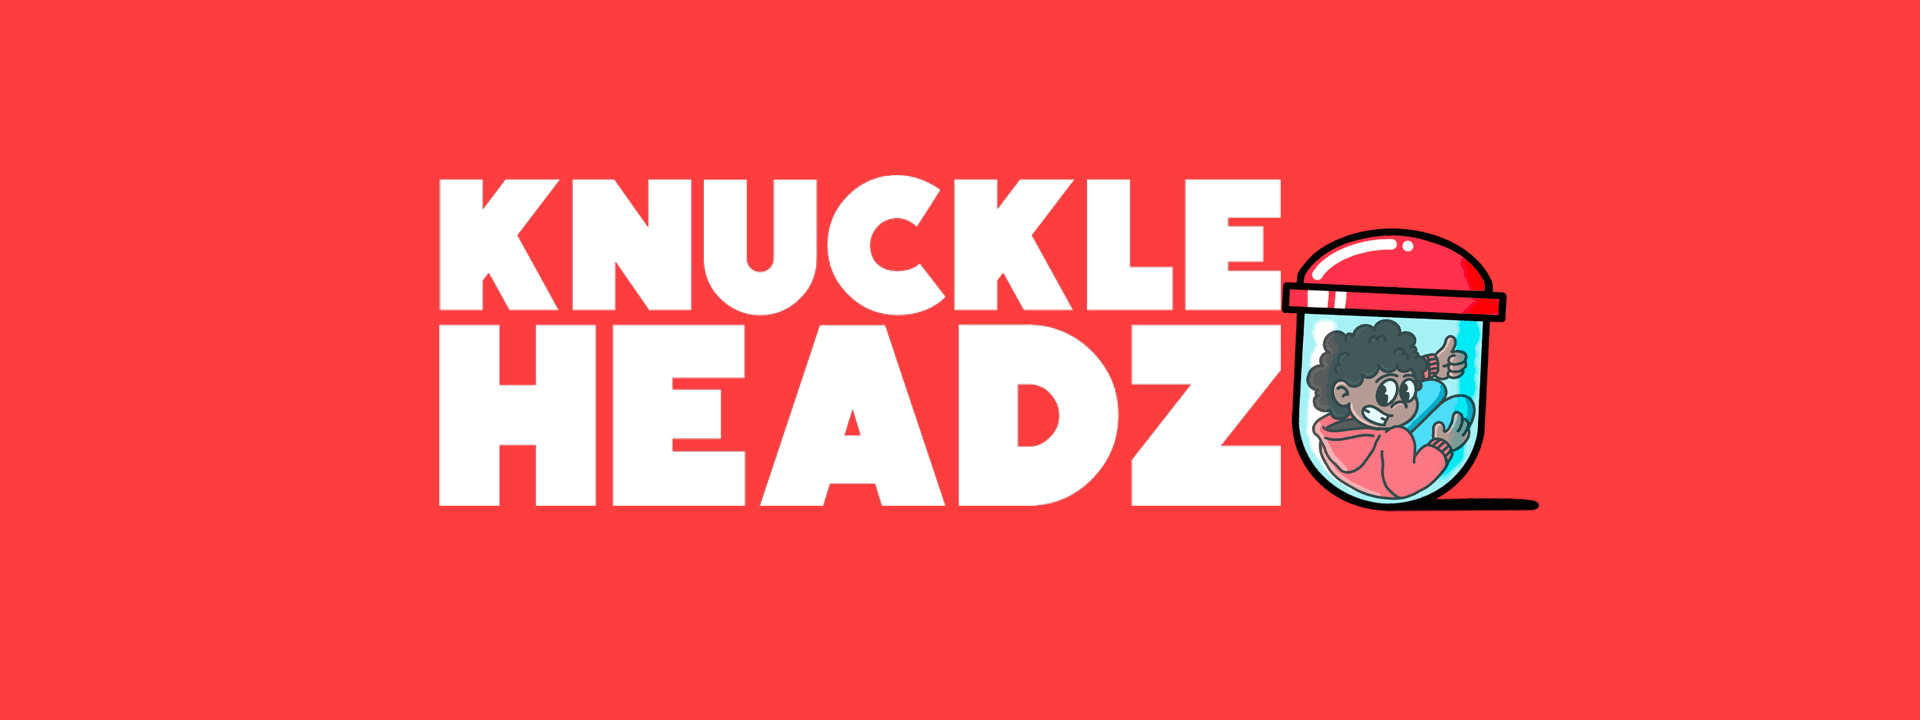 KnuckleHeadz banner